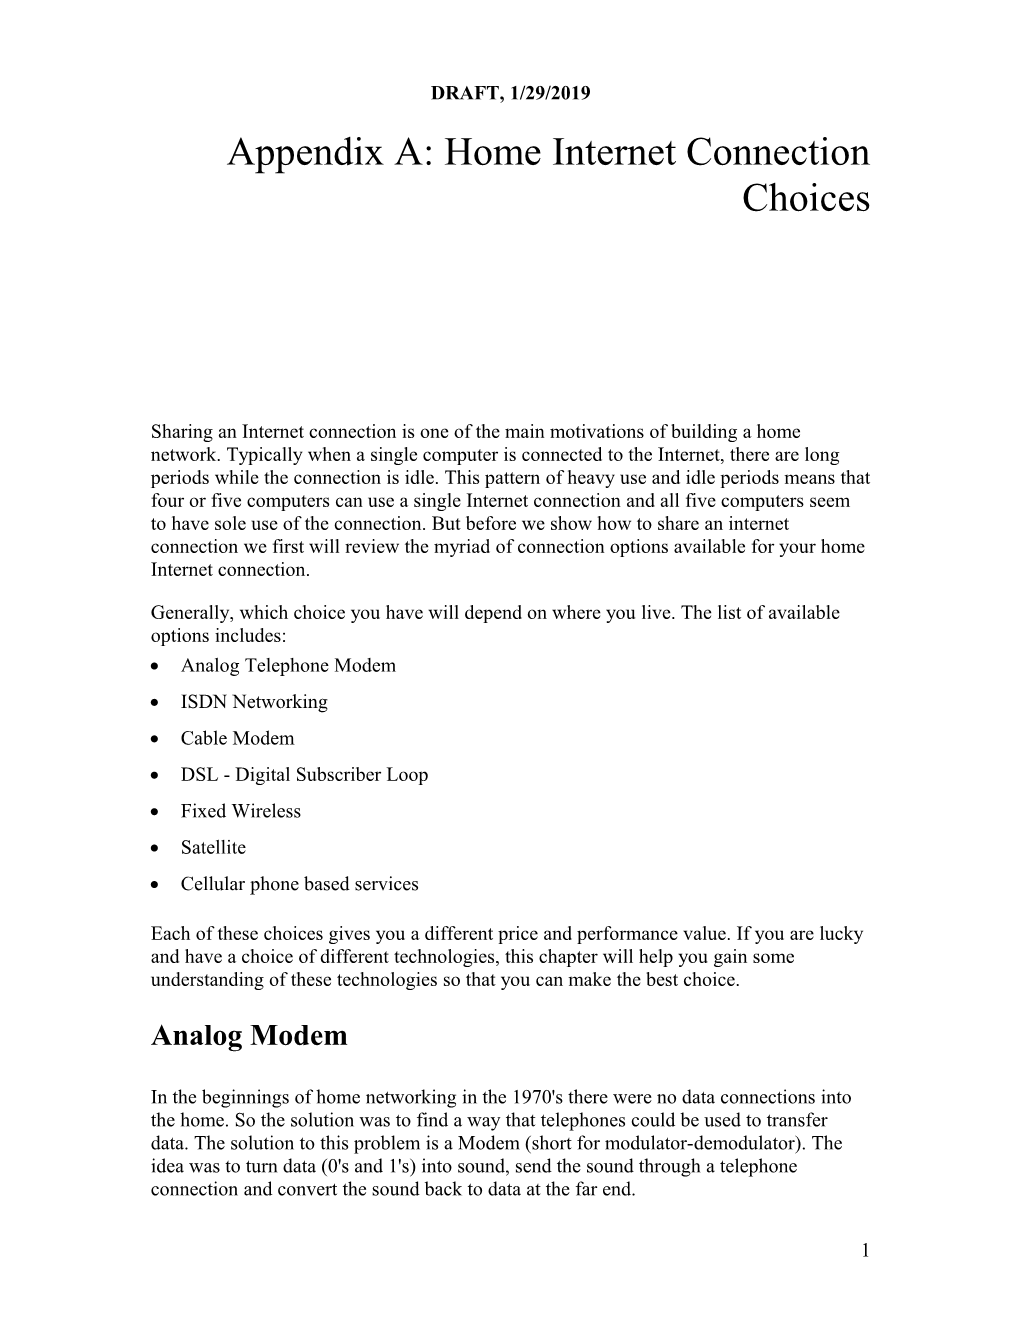 Appendix A: Home Internet Connection Choices